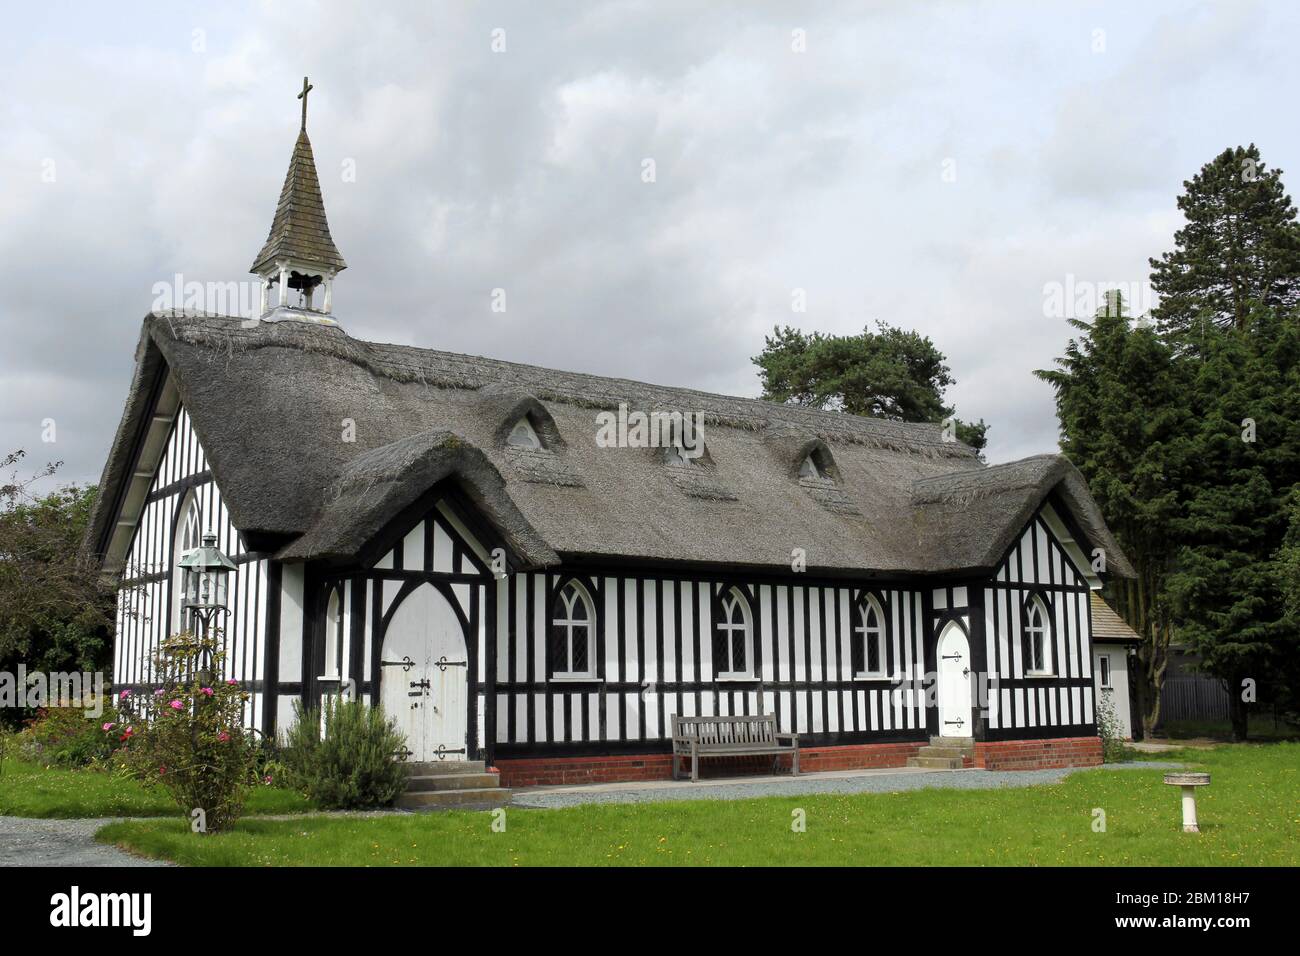 All Saints Church, Little Stretton, Shropshire, Großbritannien. Ein Fachwerk-Reetgedeckten Gebäude im Jahr 1903 gebaut - ungewöhnlich für diese Zeit und Klasse II aufgeführt Stockfoto